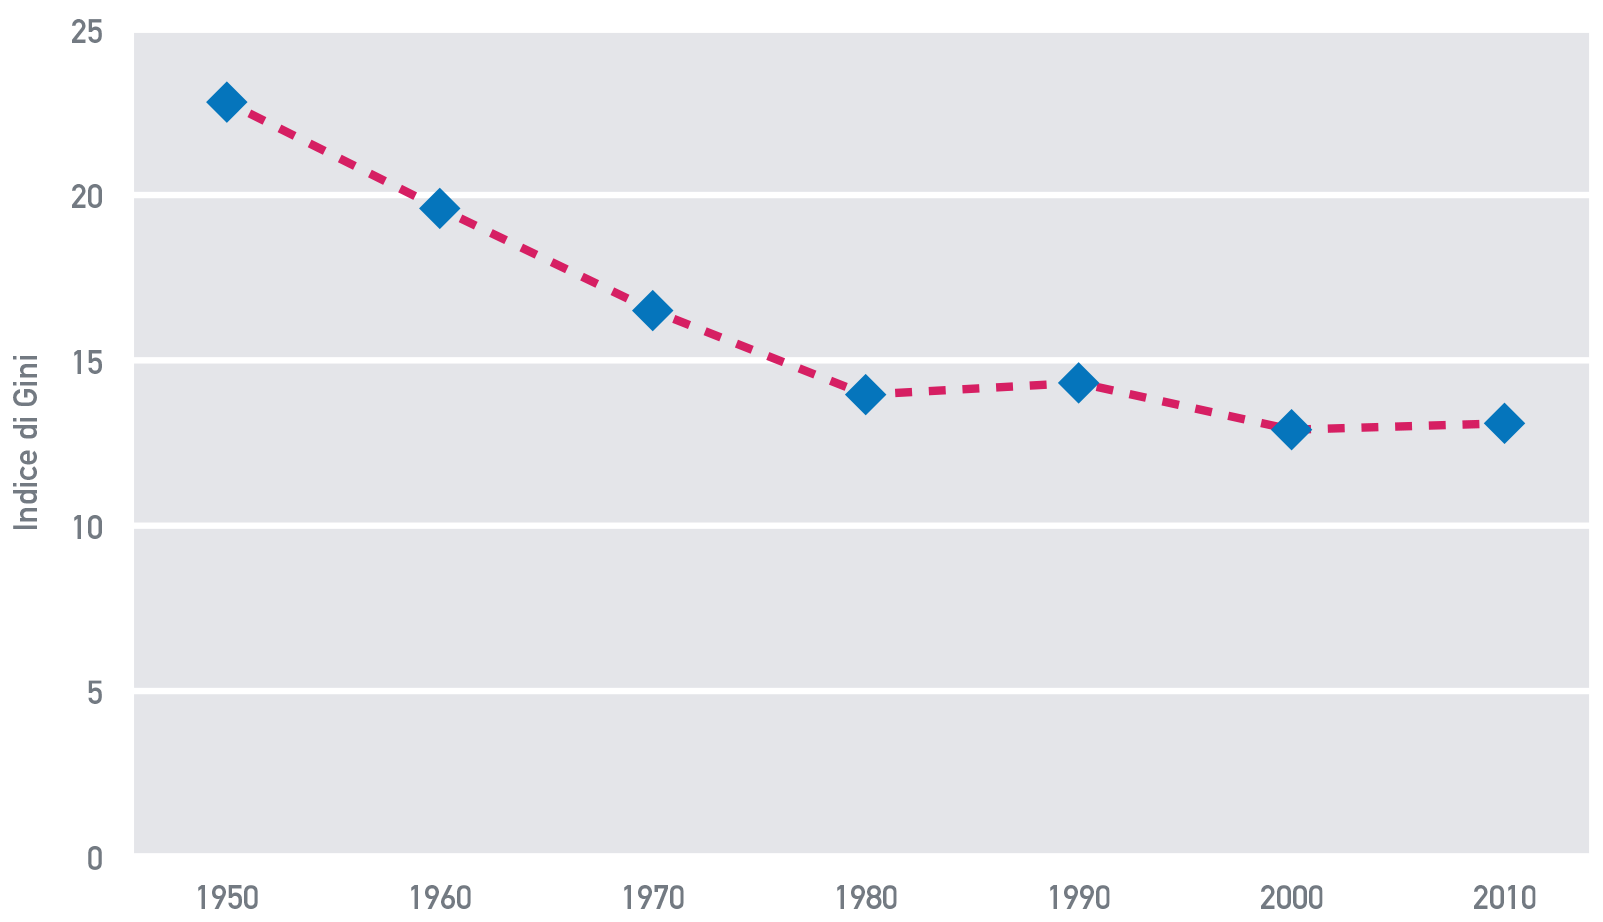 Fig. A.13: Disuguaglianze regionali in Europa, 1950-2010